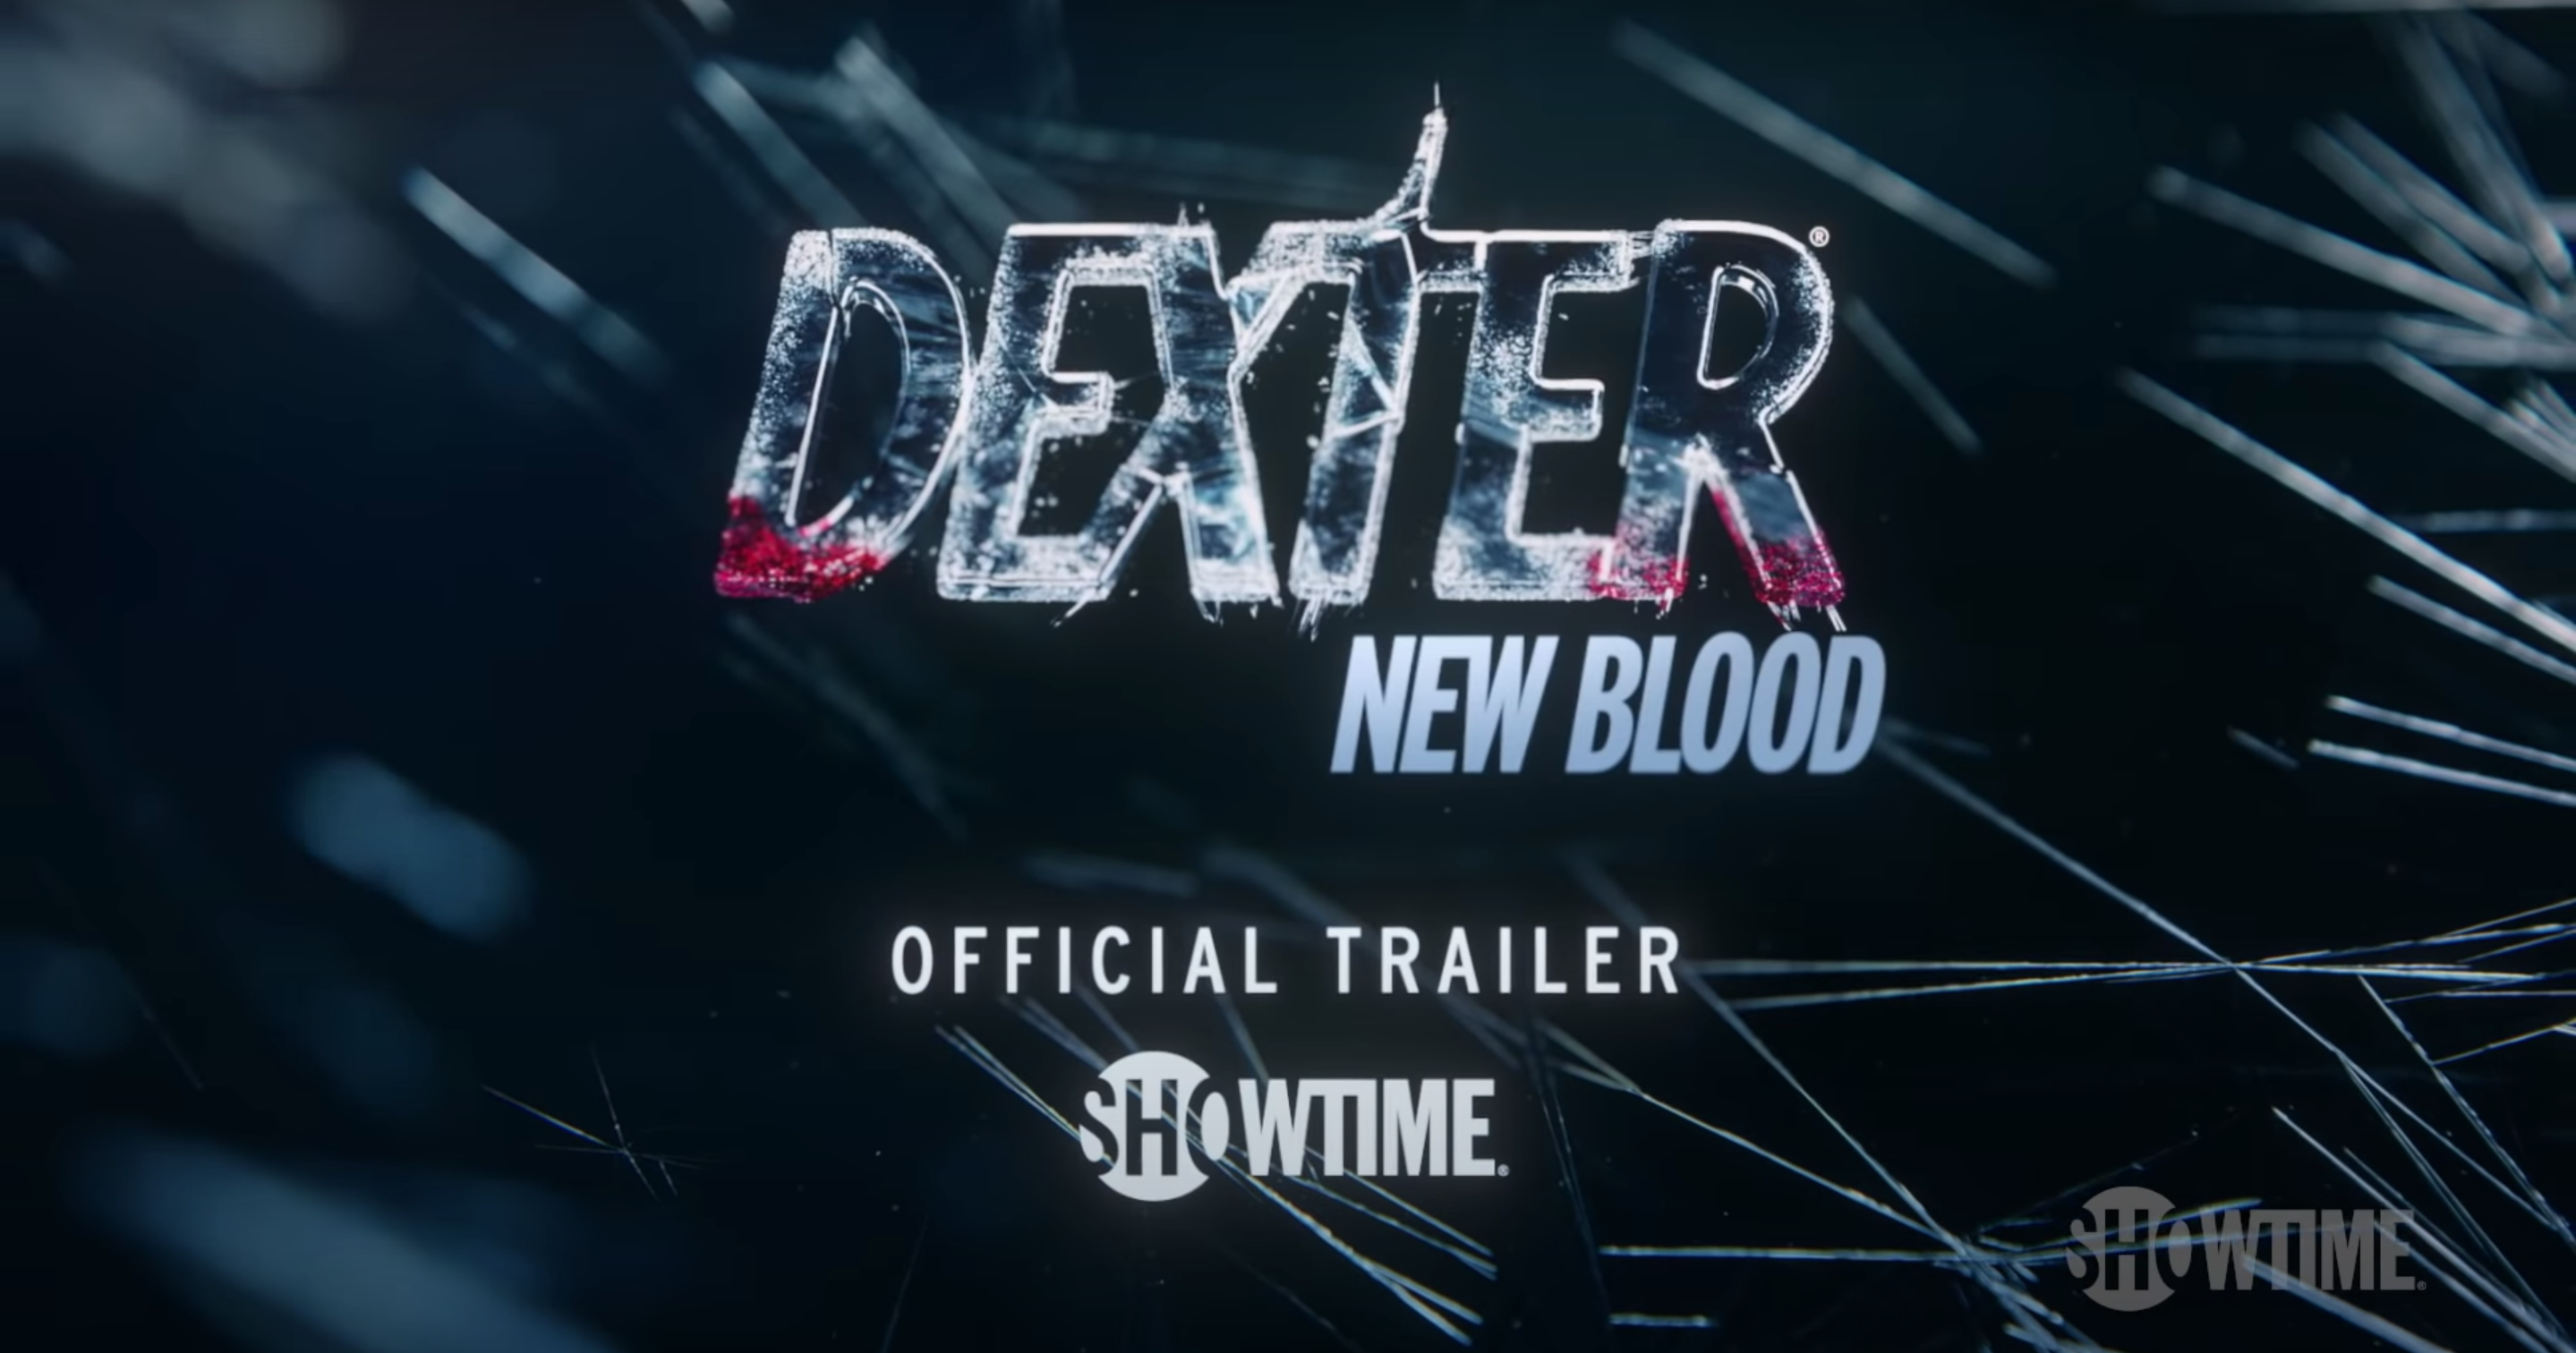 Sneak Peek of Season 1, Dexter: New Blood